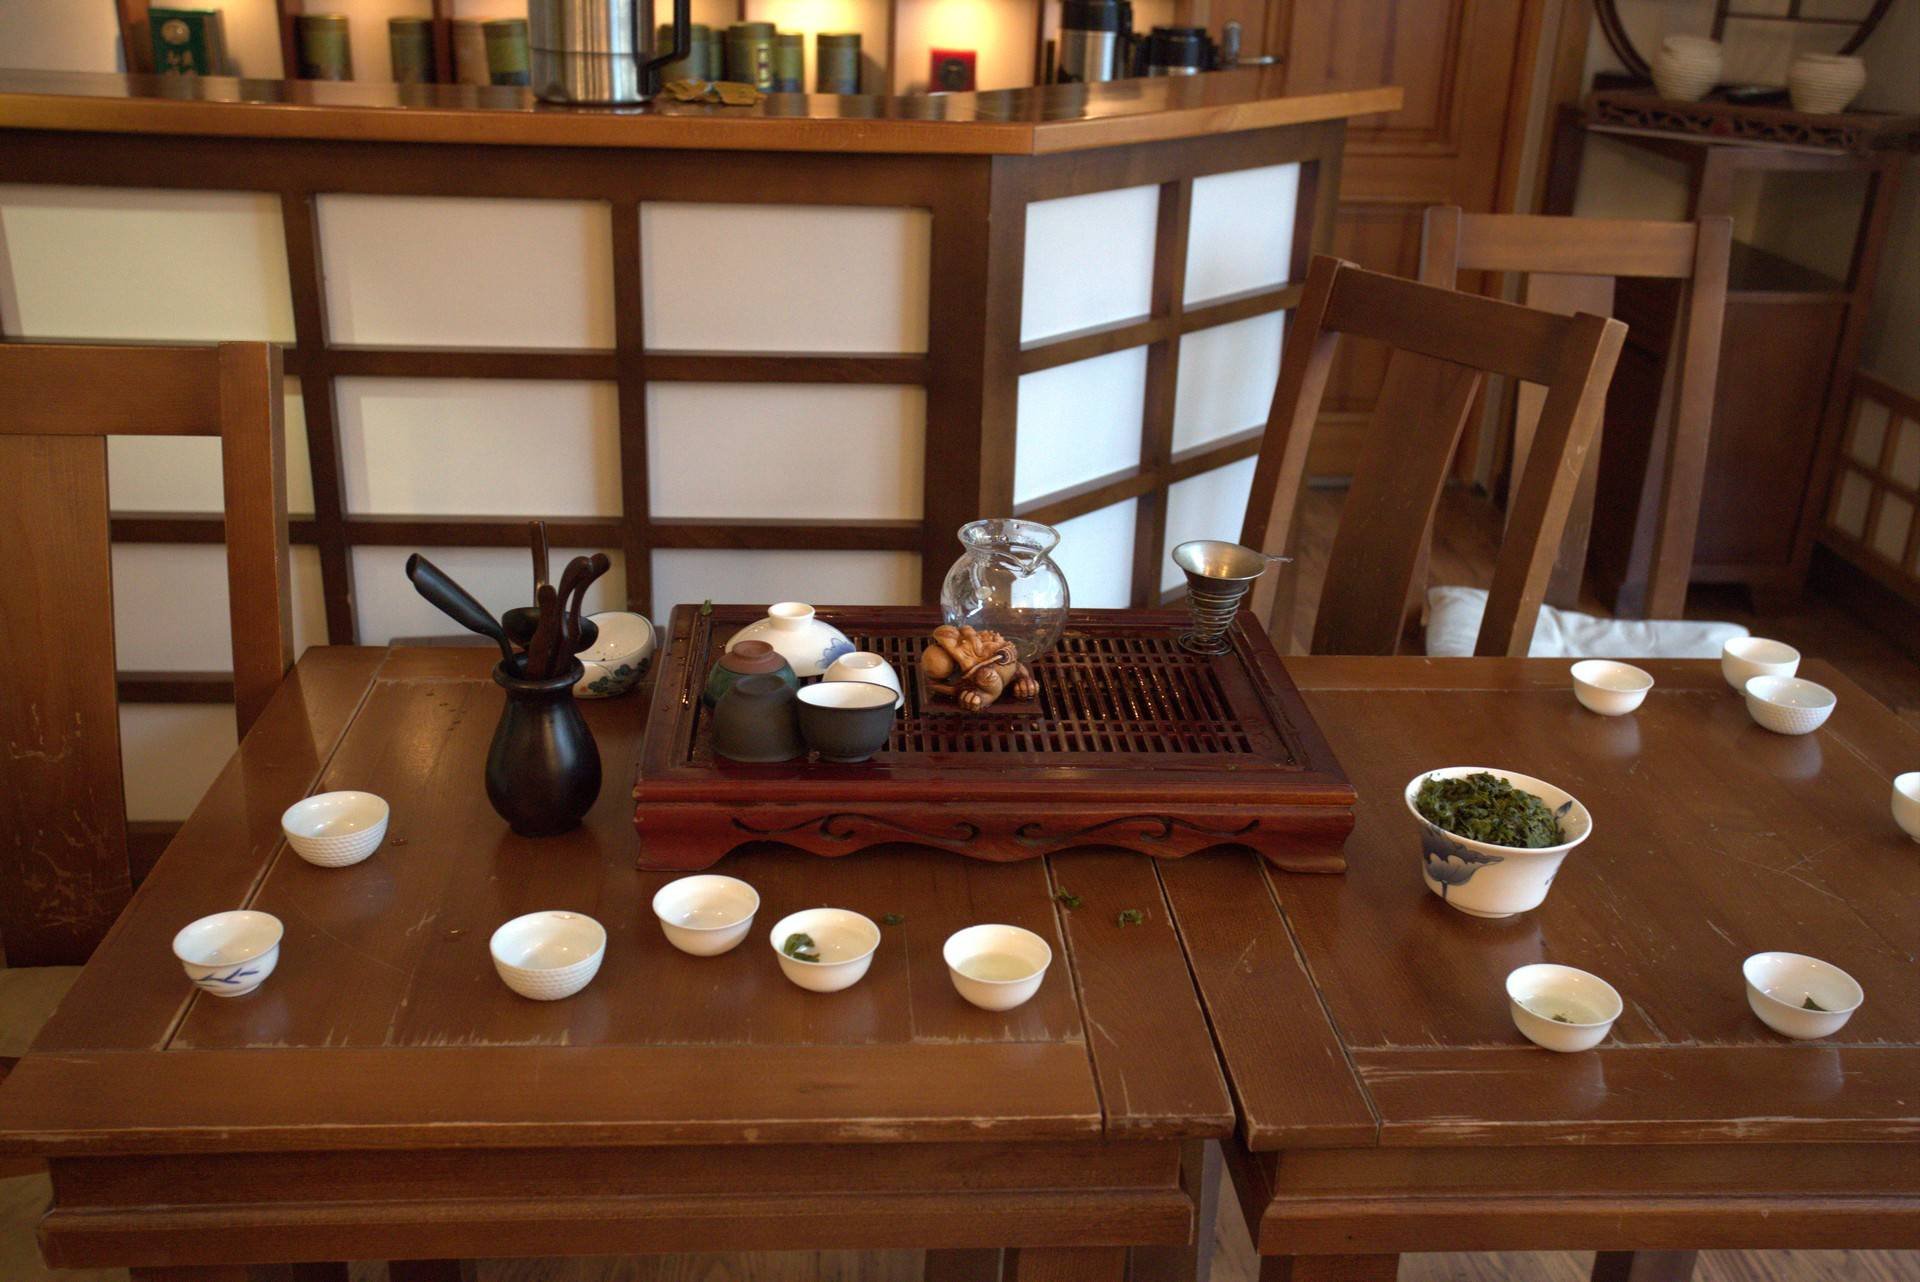 Забронировать столик в японском саду. Чайная церемония Китай чайный домик. Церемония чаепития Китай чайный домик. Мрия чайные церемонии. Китайский домик для чайной церемонии.